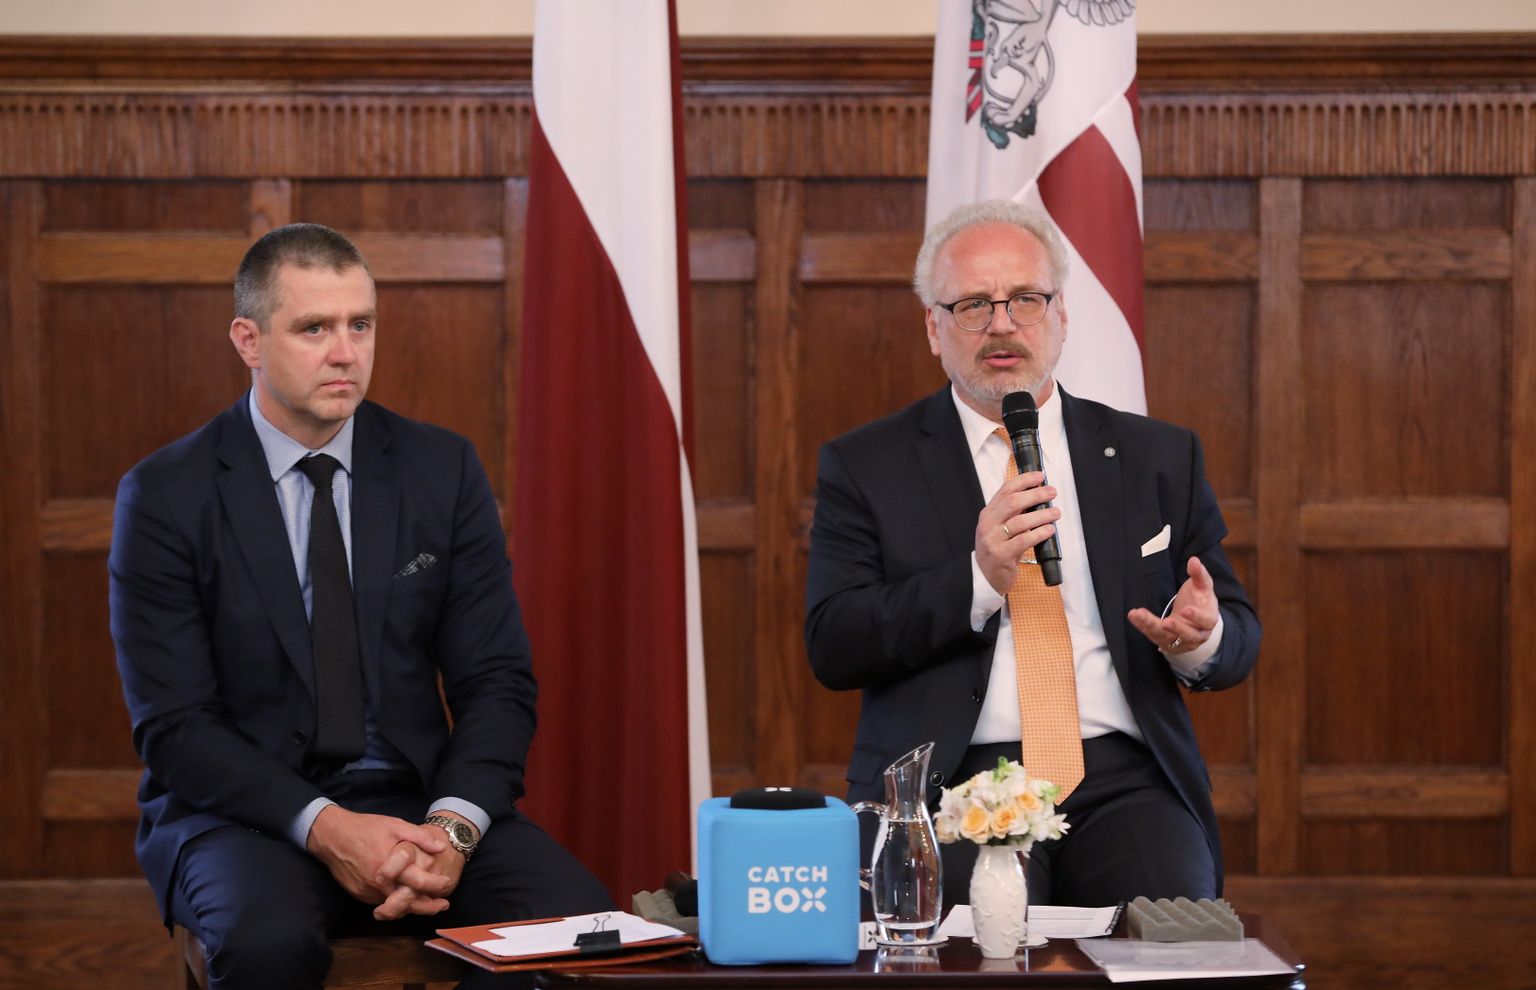 Valsts prezidents Egils Levits (no labās) un politologs Filips Rajevskis piedalās diskusijā "Jaunieši politikā un demokrātijas attīstībā" Rīgas pilī.